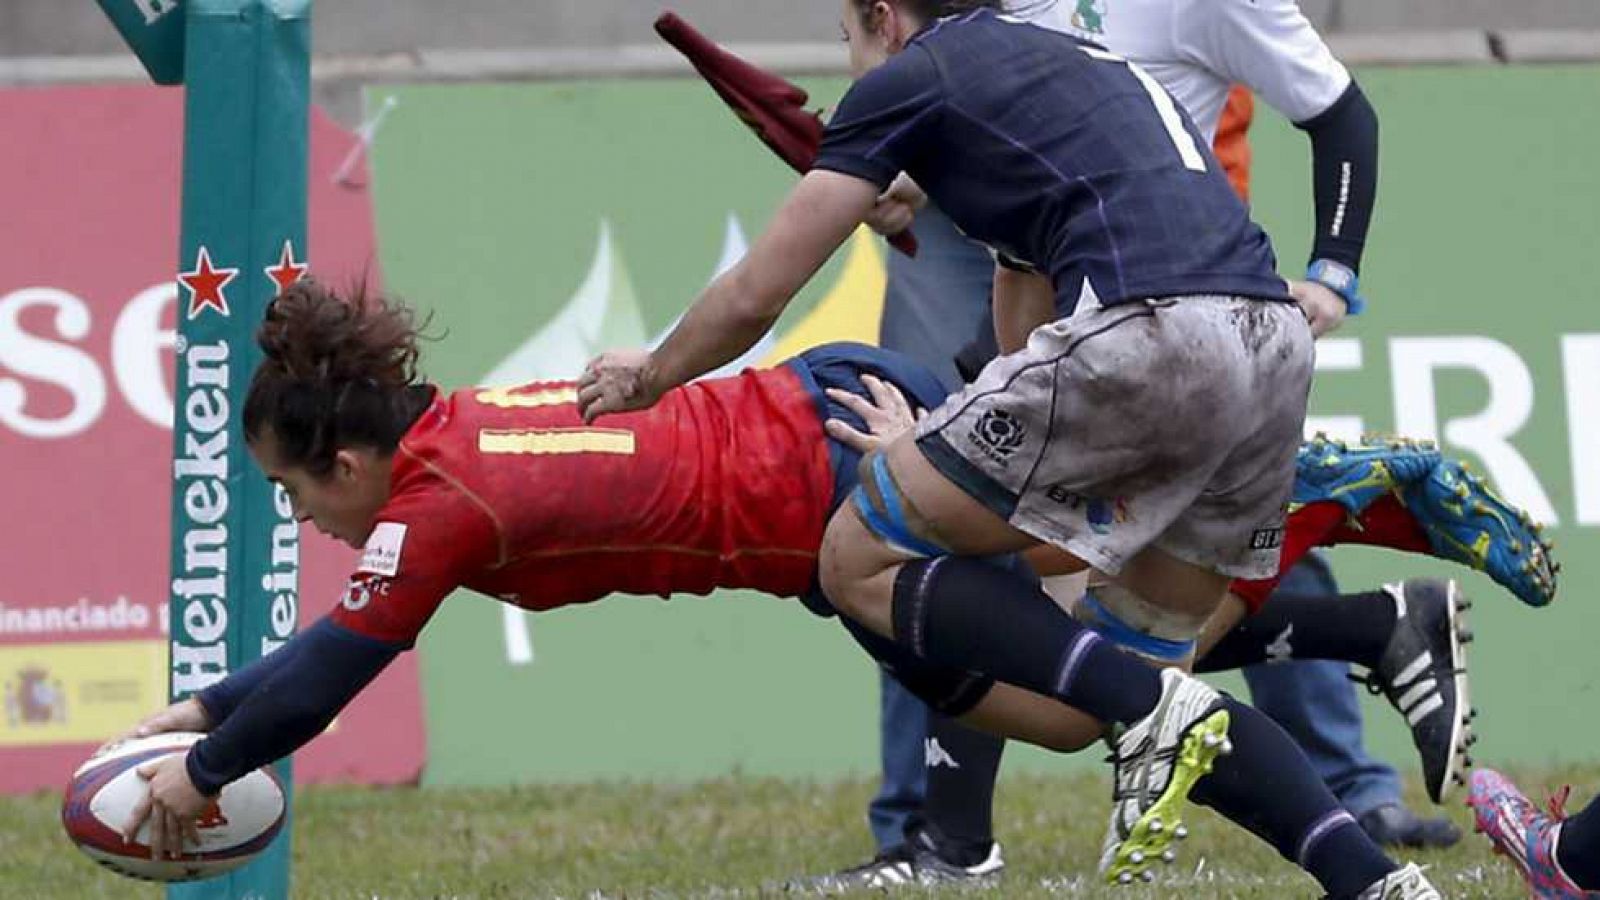 Rugby - Clasificación Campeonato del Mundo Femenino: España - Escocia